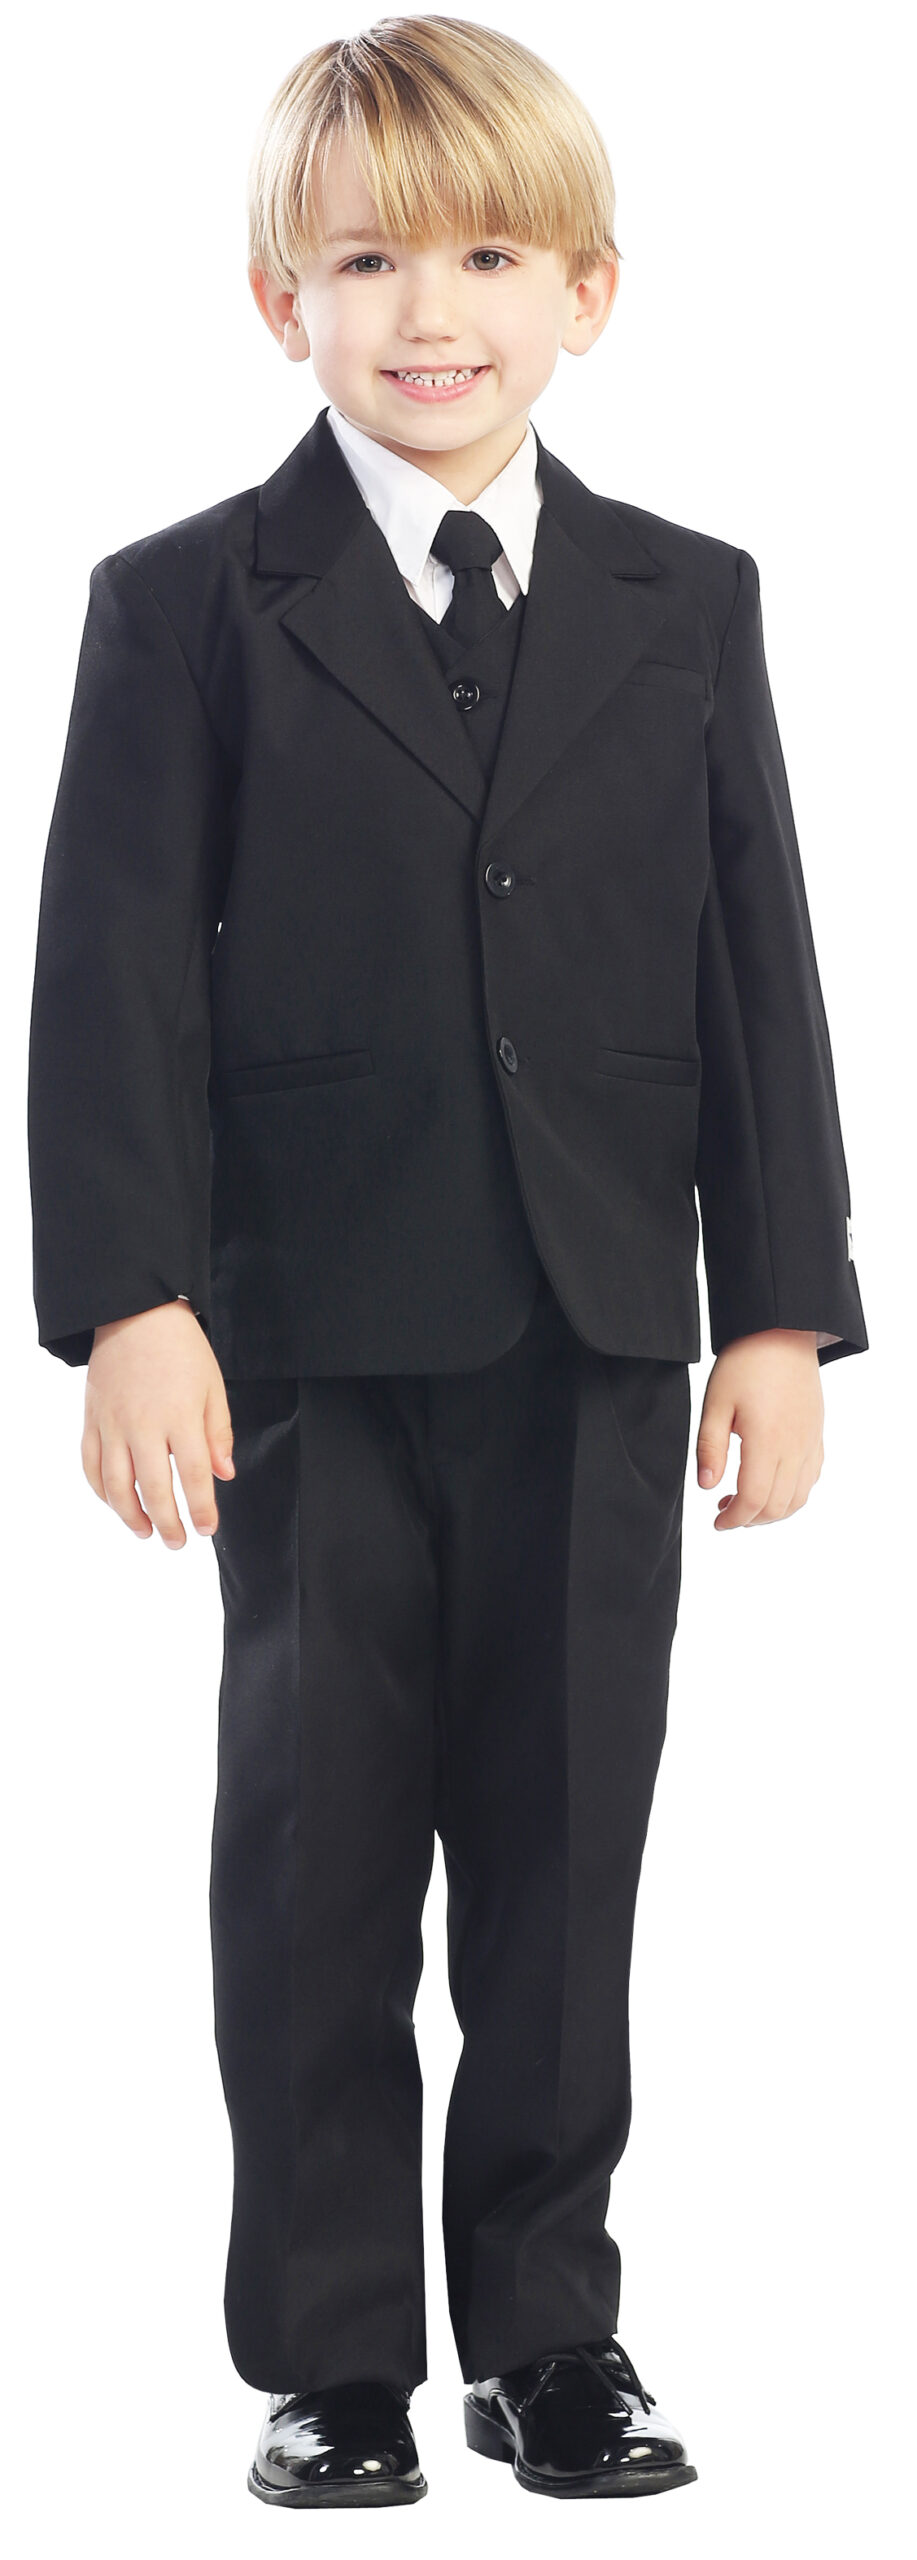 Avery Hill 5-Piece Boy's 2-Button Dress Suit Full-Back Vest - Black Size 5